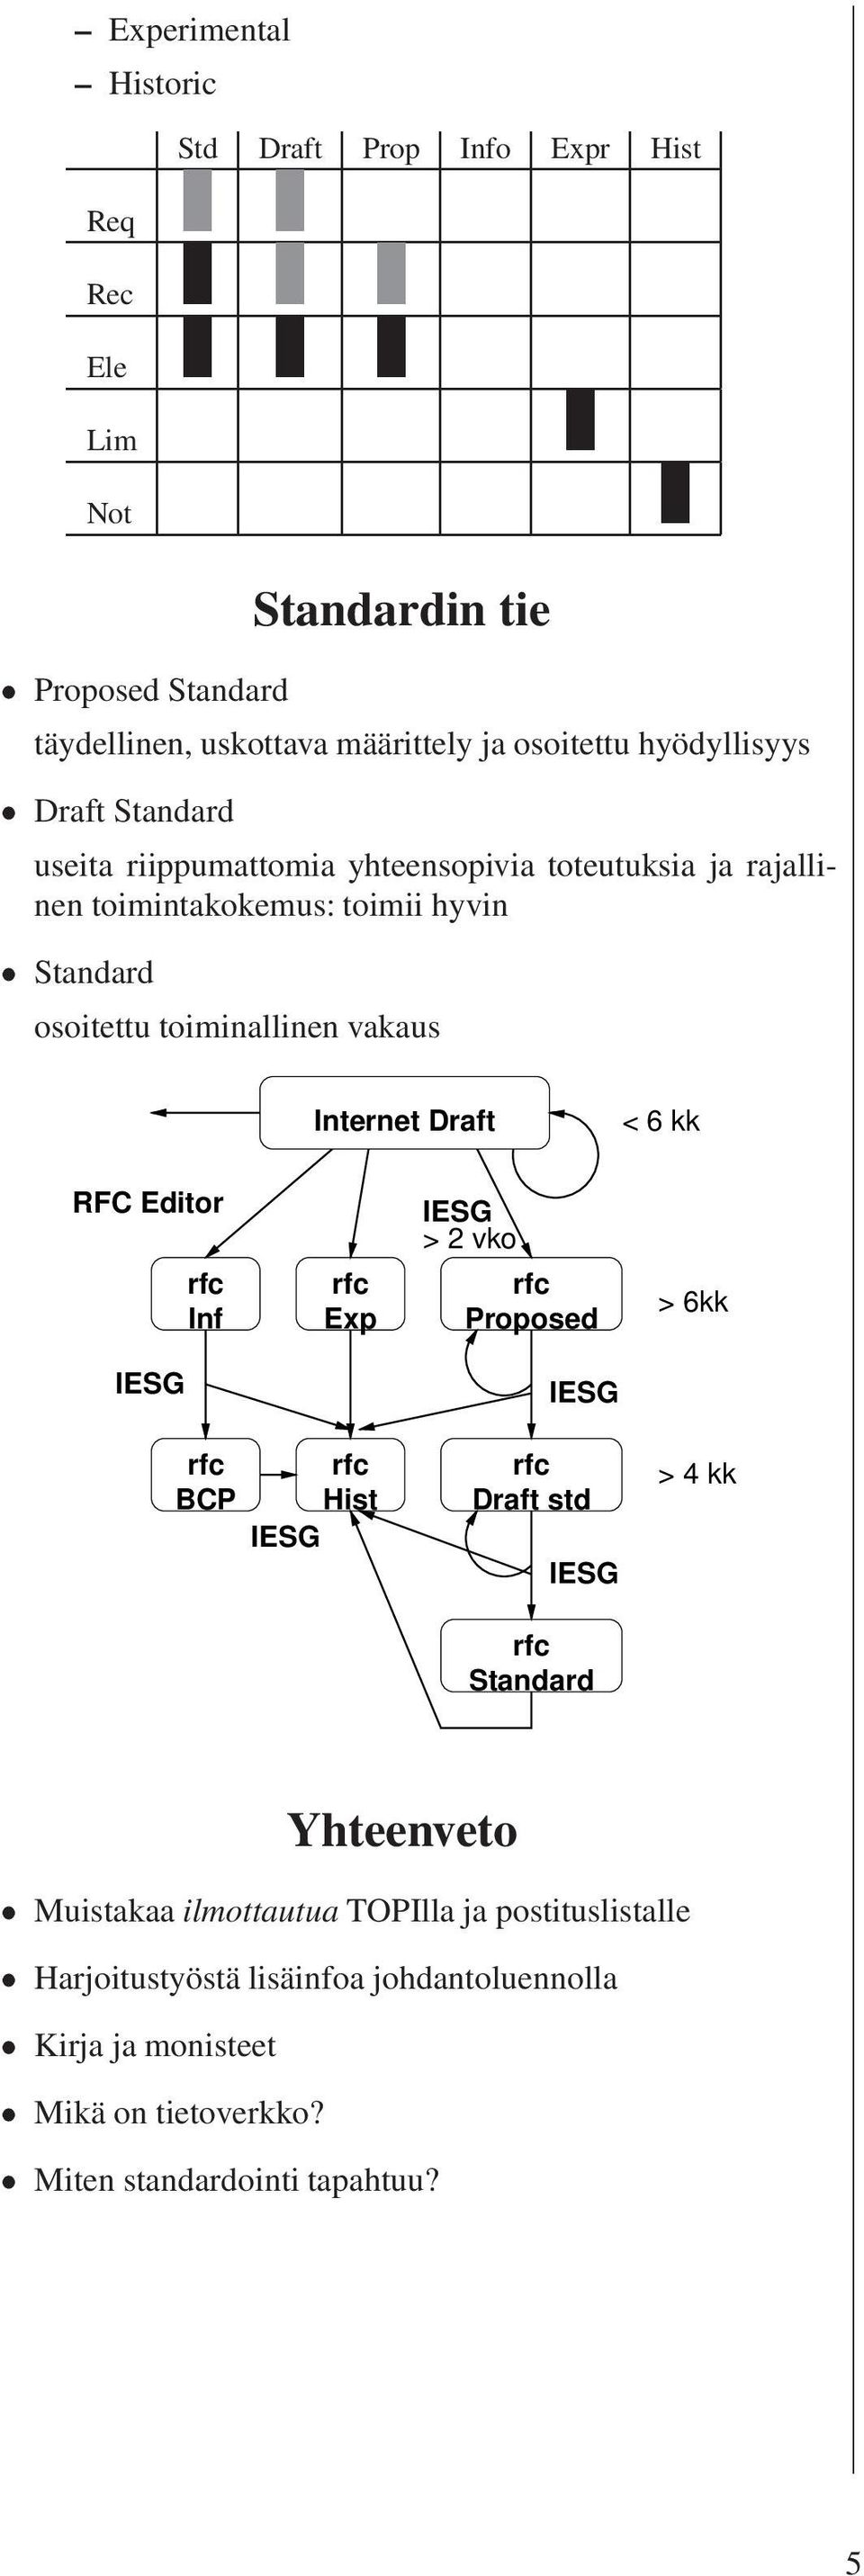 vakaus Internet Draft < 6 kk RFC Editor Inf Exp > 2 vko Proposed > 6kk BCP Hist Draft std > 4 kk Yhteenveto Muistakaa ilmottautua